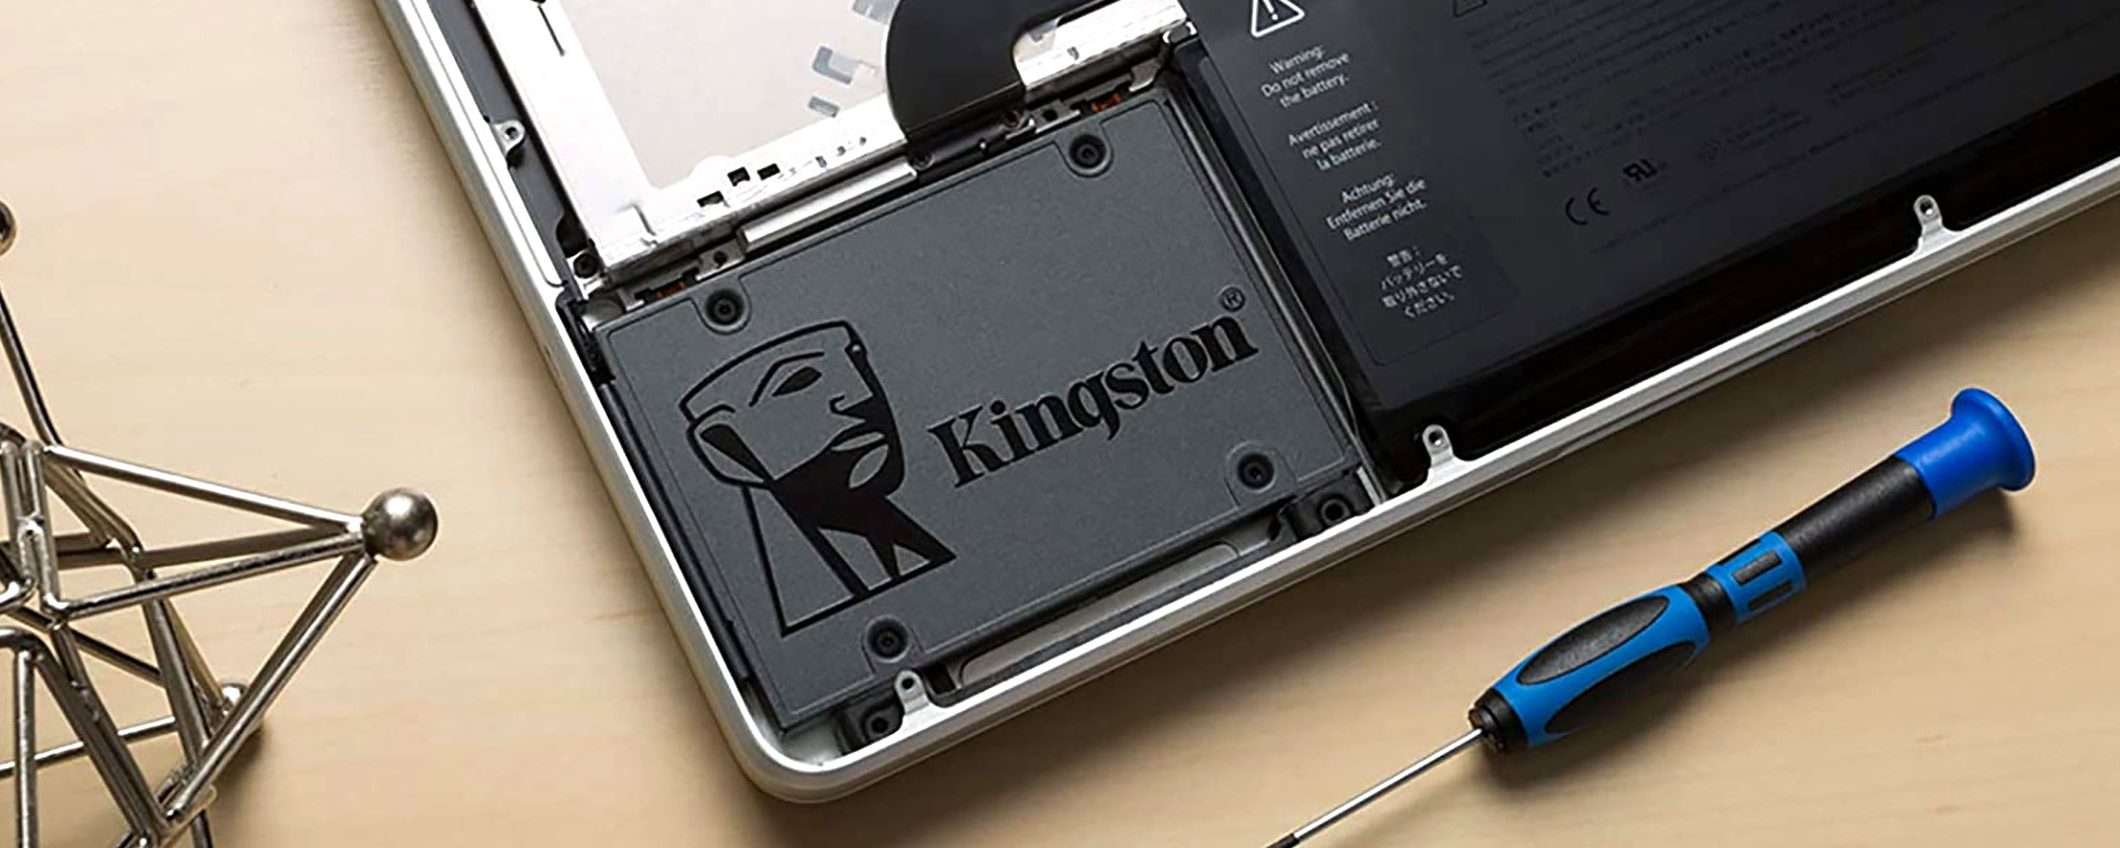 SSD Kingston A400 da 240GB: 55% di sconto e prezzo PICCOLISSIMO